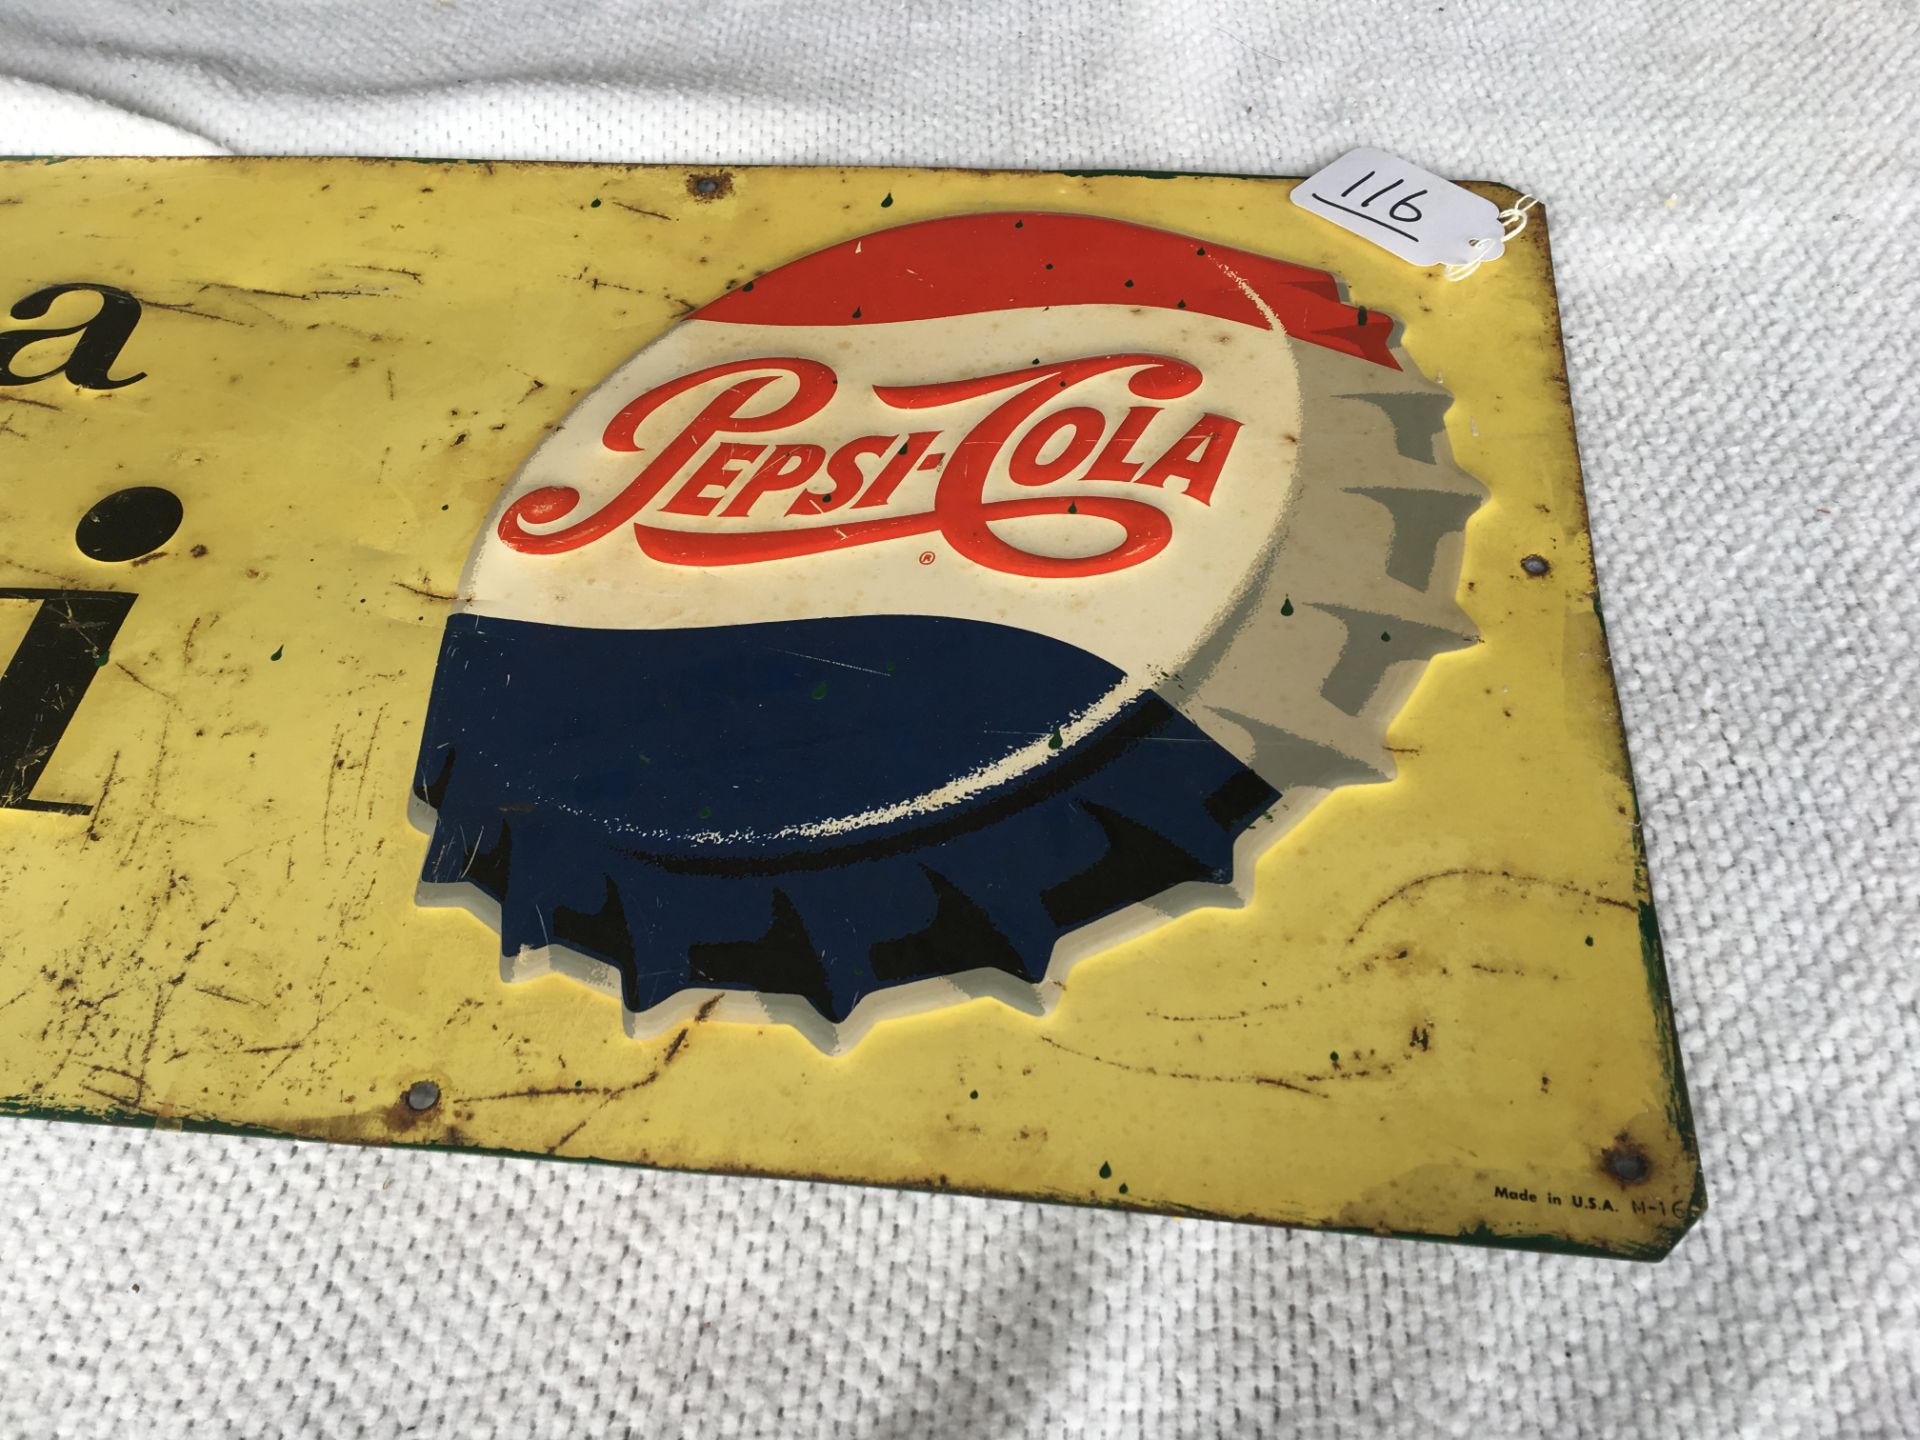 Pepsi Cola, 14” x 34”, metal sign, USA M-16, Single dot - Image 2 of 2